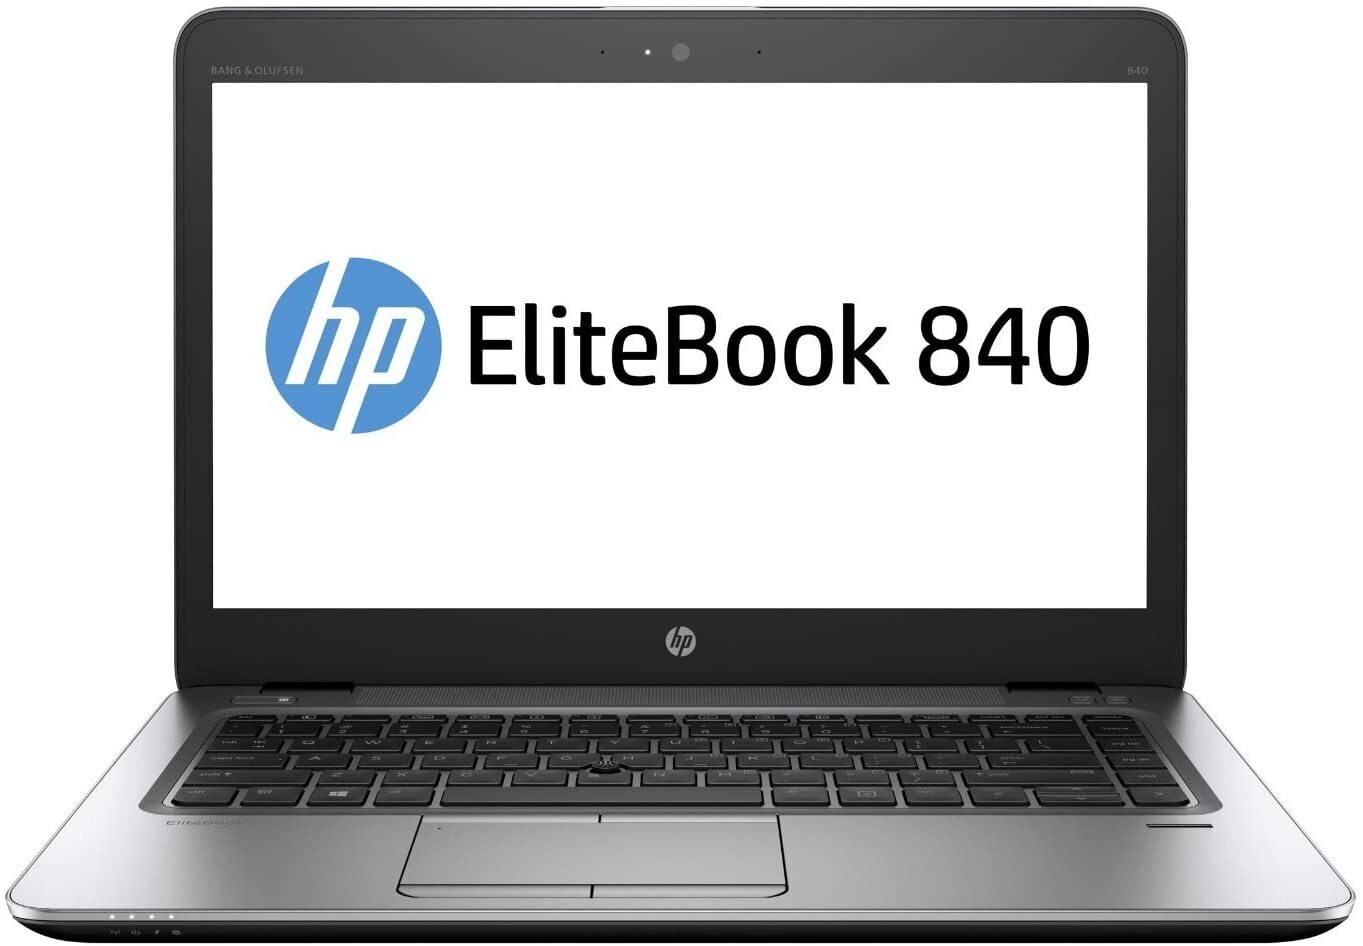 HP EliteBook 840 G3 Intel i5 6200U 2.30GHz 8GB RAM 128GB SSD 14" Win 10 - B Grade Full Size Image